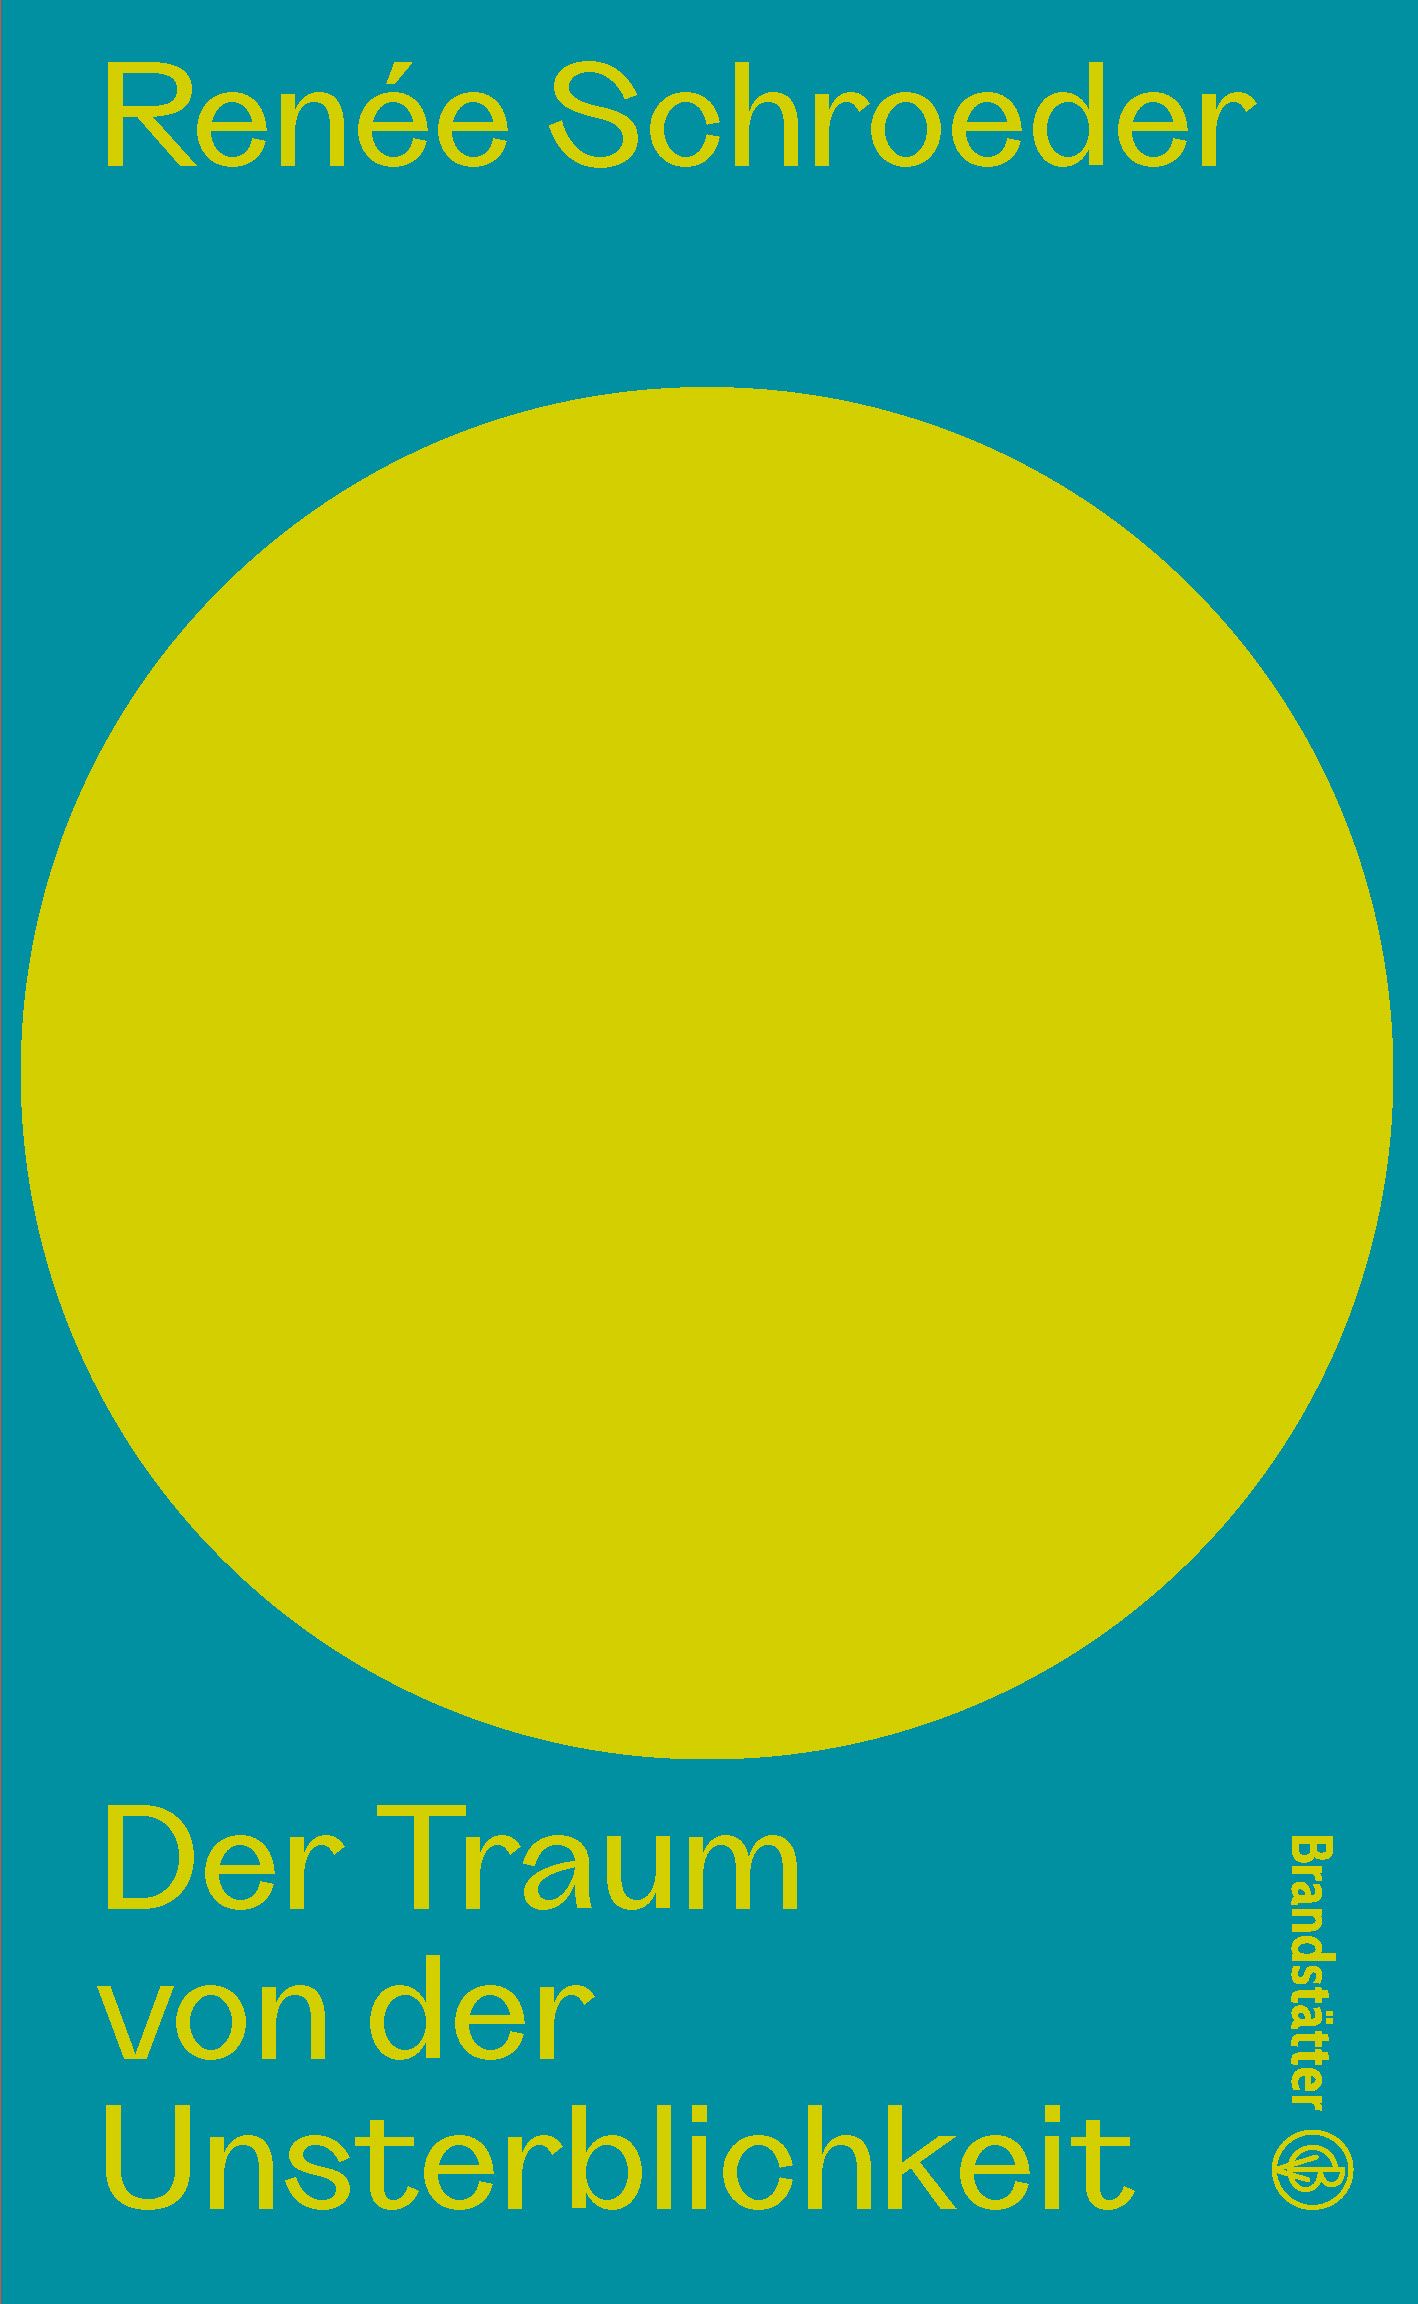 Eine große Gelbe Scheibe, darunter der Buchtitel "Der Traum von der Unsterblichkeit"